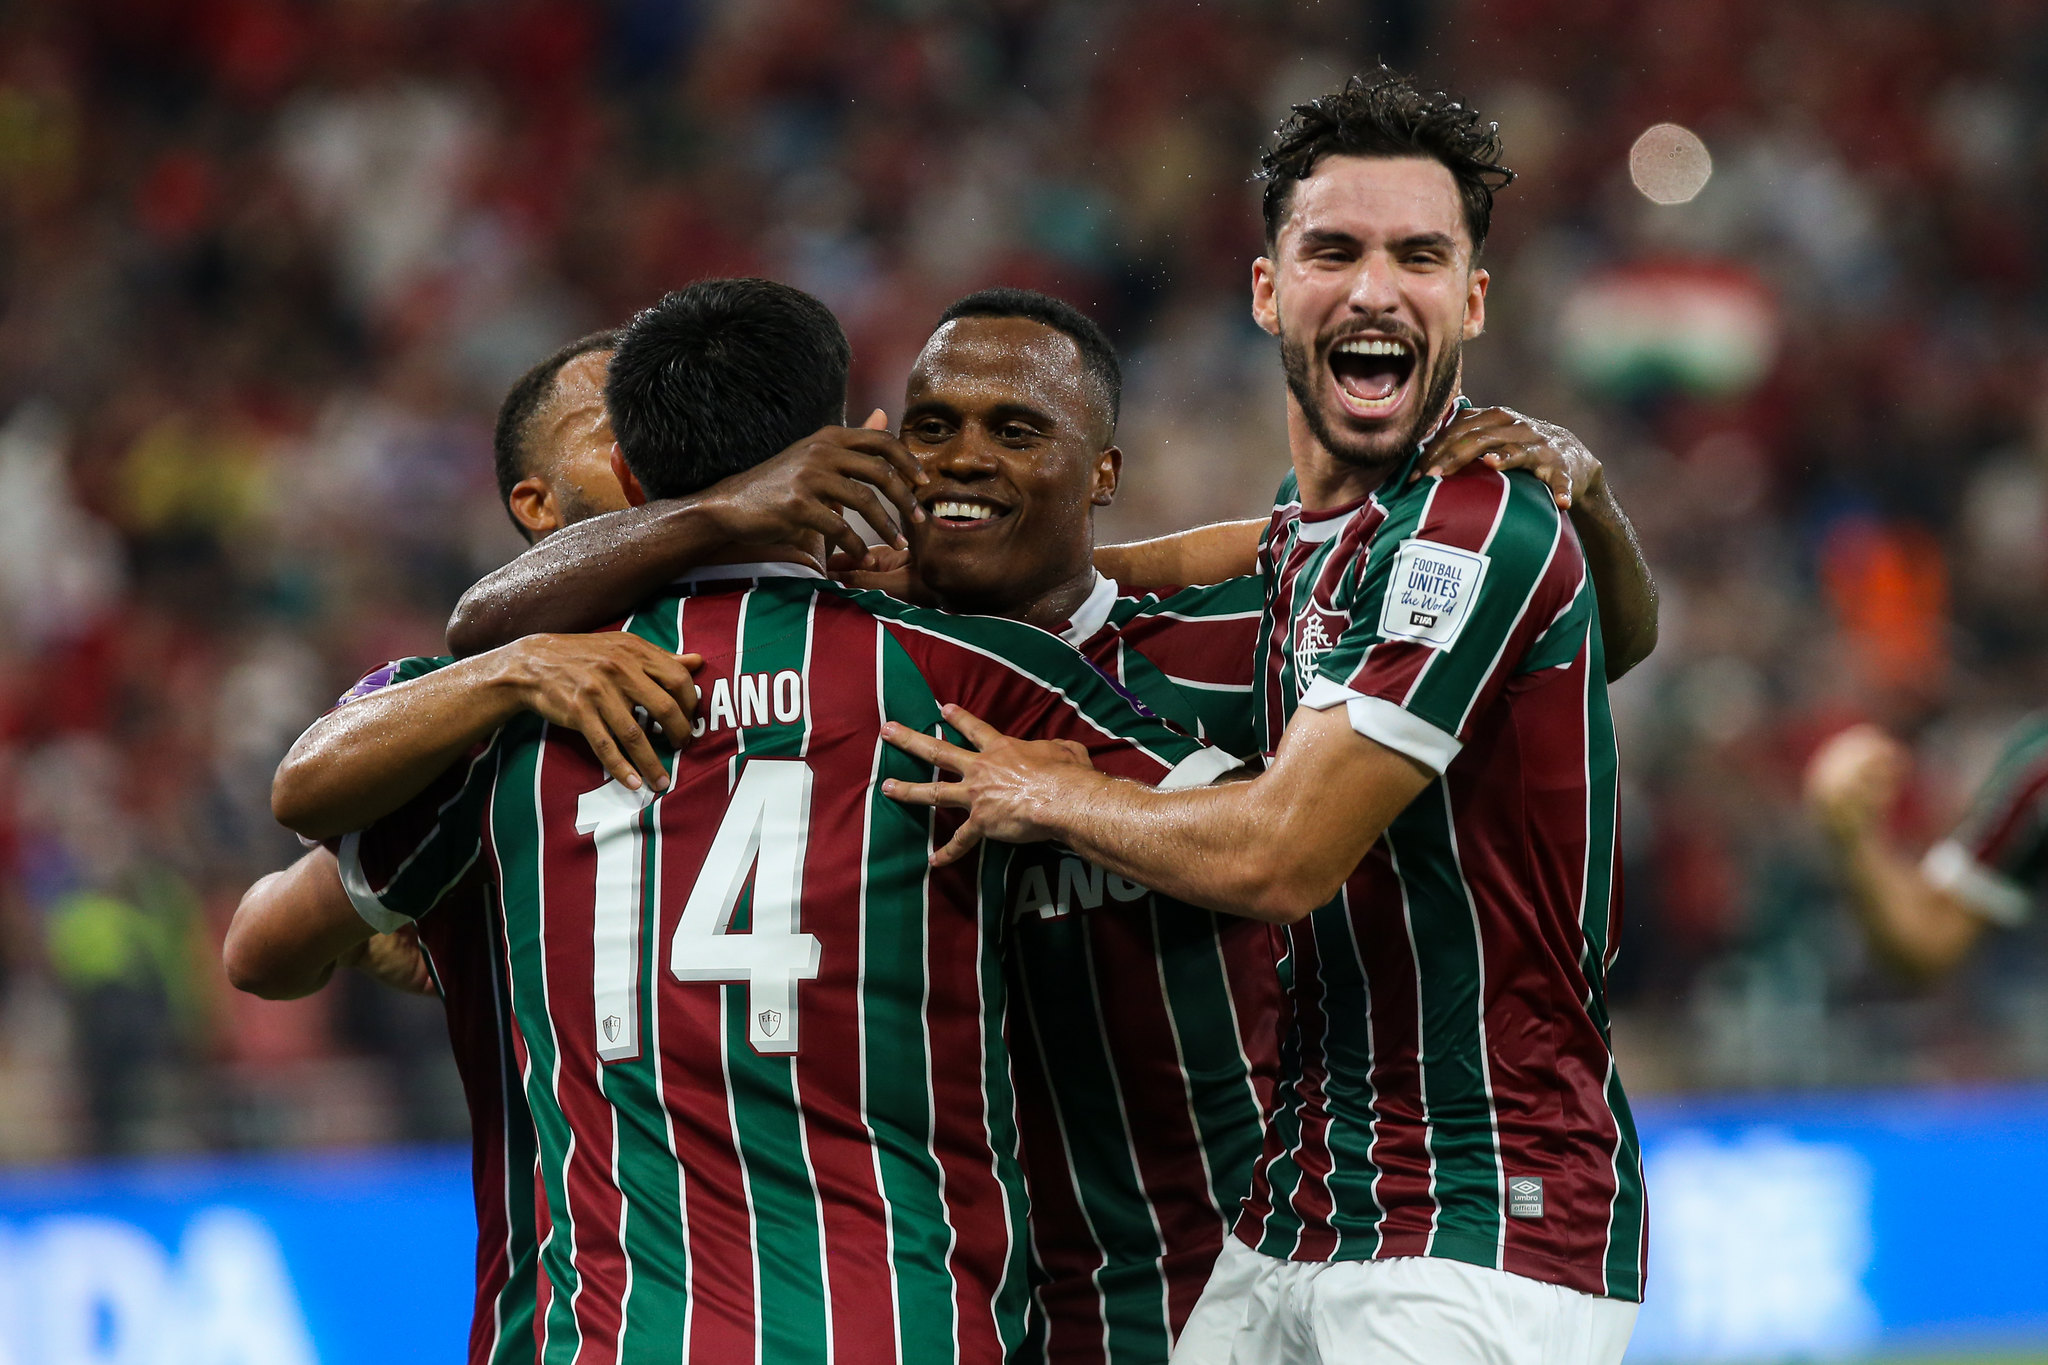  Jornal inglês menospreza Fluminense antes da final com o Manchester City 